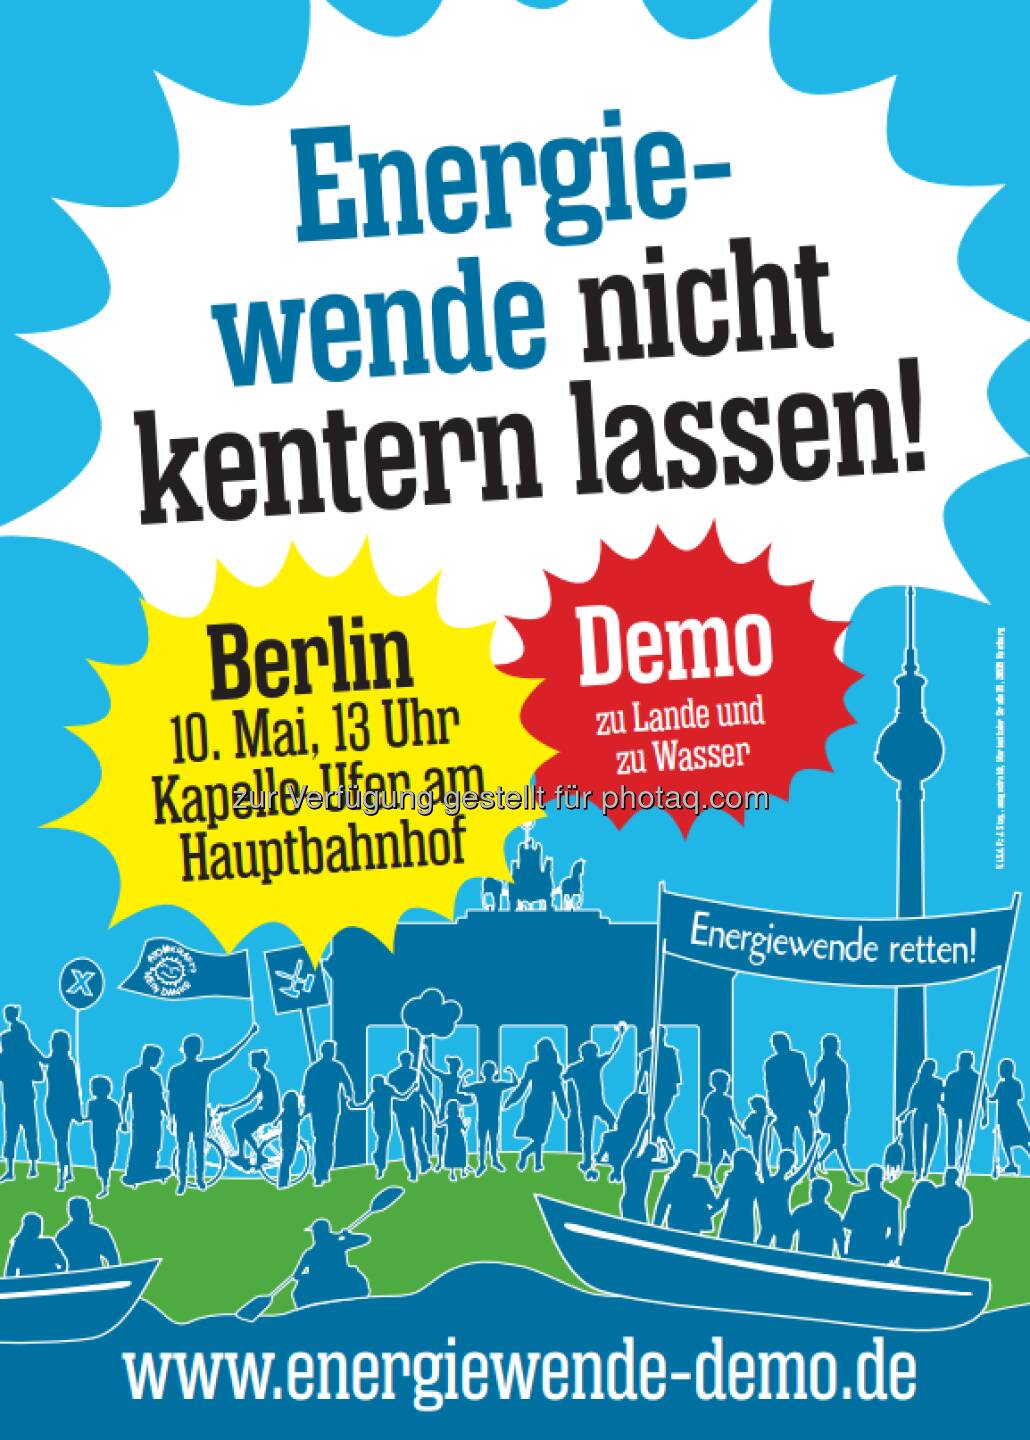 Lasst die Energiewende nicht kentern! Seid am 10. Mai in Berlin dabei und demonstriert gegen die Pläne der Bundesregierung. Alle Infos: http://goo.gl/mFZVlM  Source: http://facebook.com/SMASolarTechnology